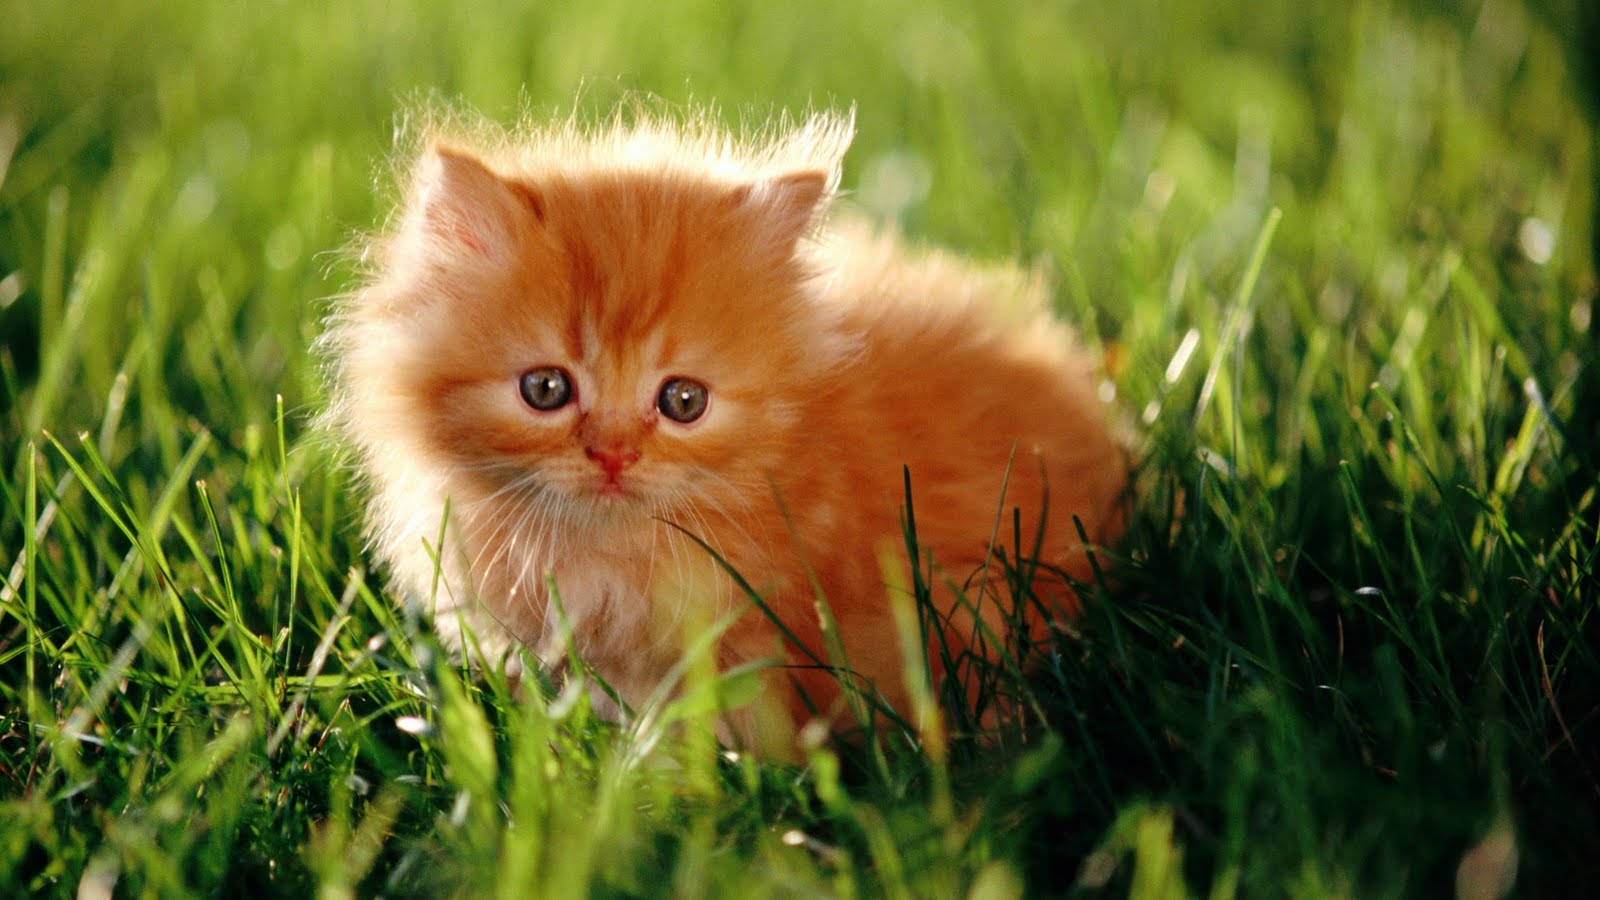 Beautiful Cat In Grass Field Background